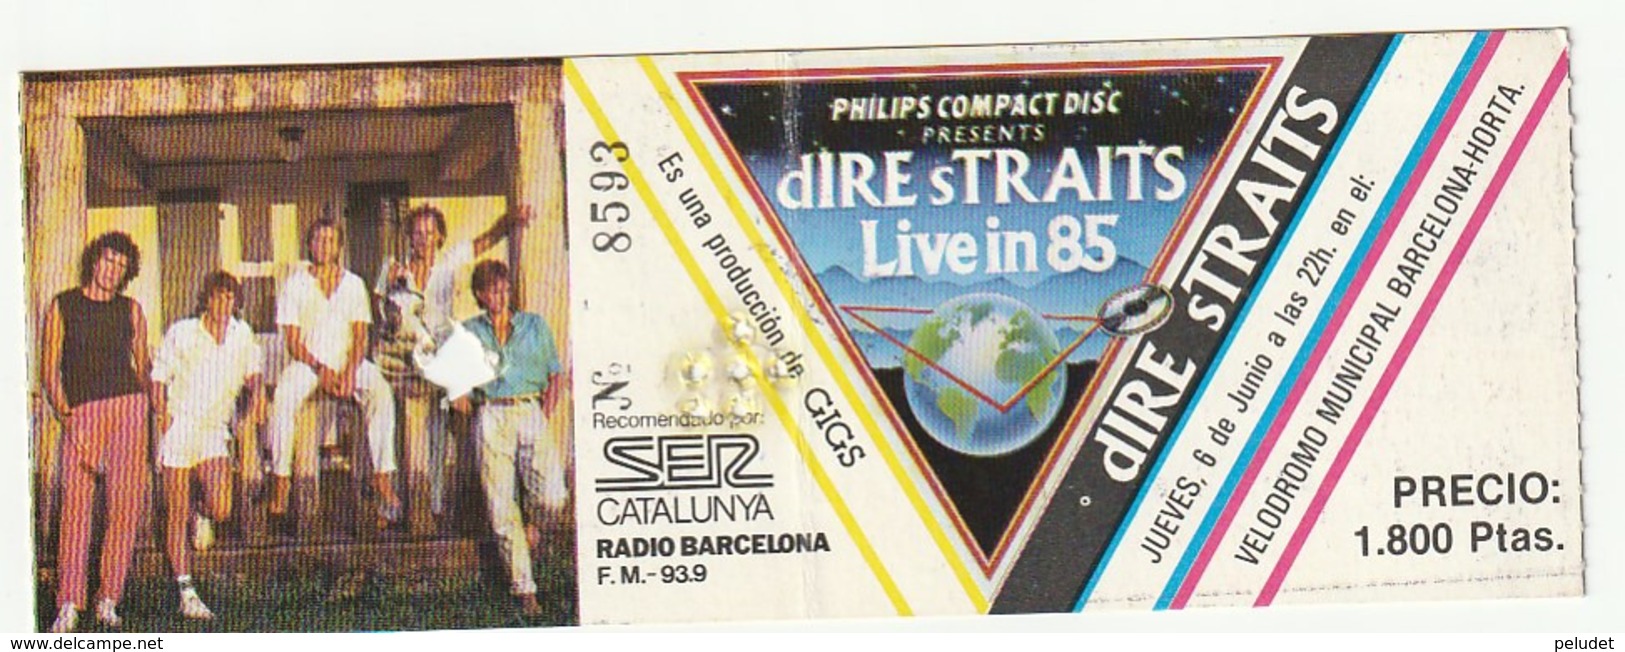 TICKET - ENTRADA / DIRE STRAITS LIVE IN 85 - BARCELONA - Tickets - Entradas